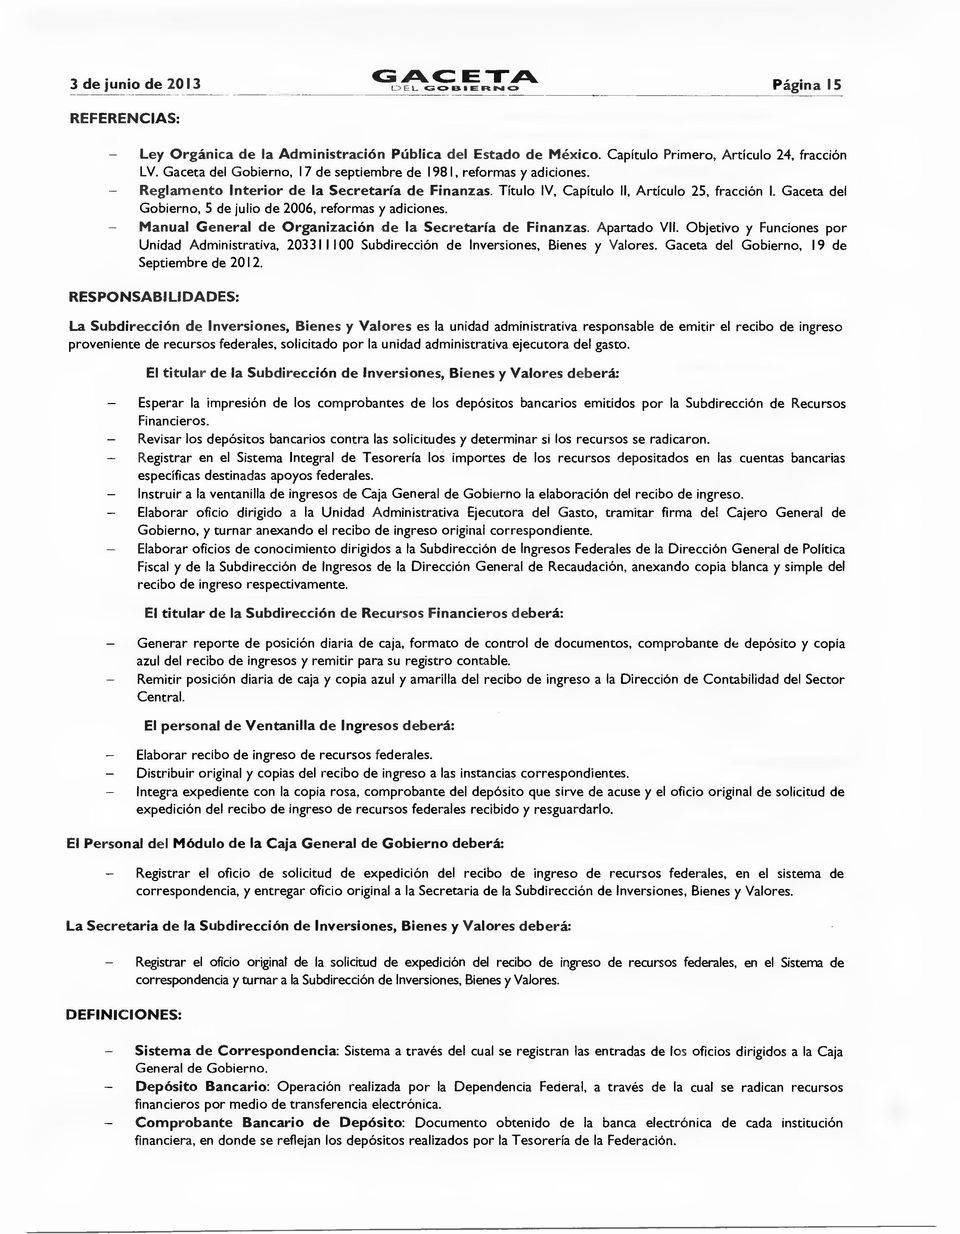 Gaceta del Gbiern, 5 de juli de 2006, refrmas y adicines. Manual General de Organización de la Secretaría de Finanzas. Apartad VII.